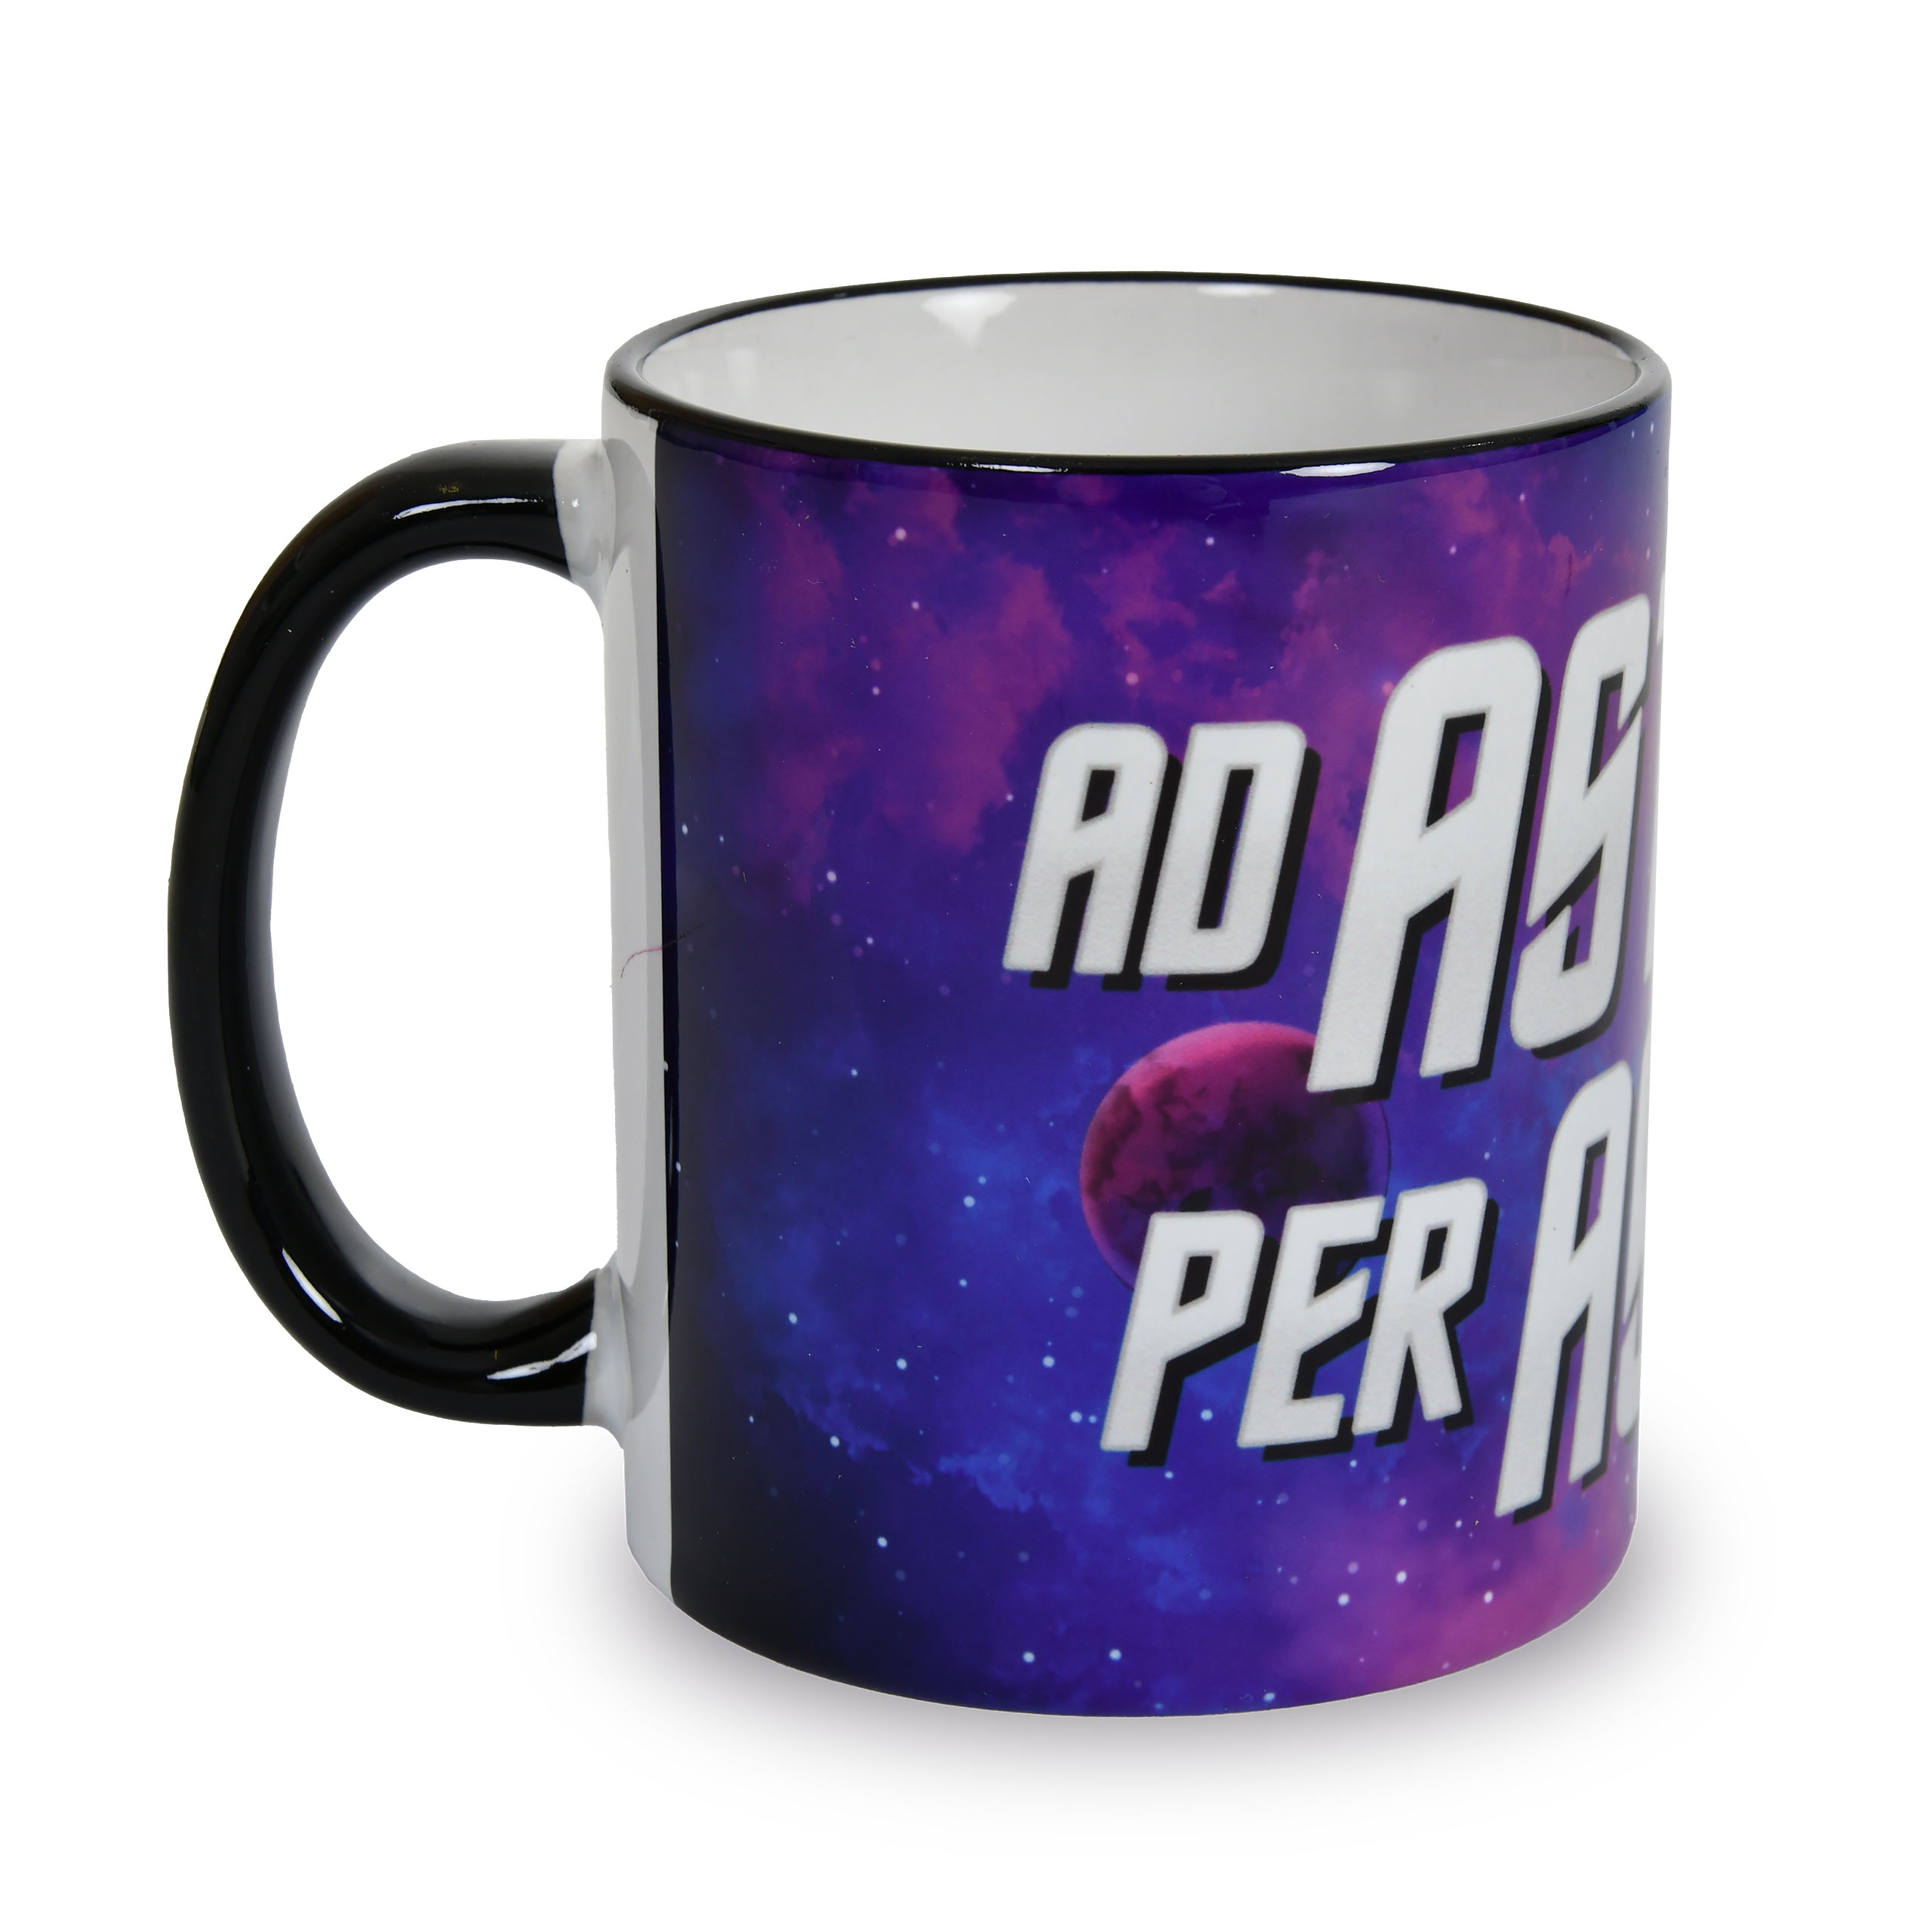 Ad Astra Per Aspera mug for Star Trek fans